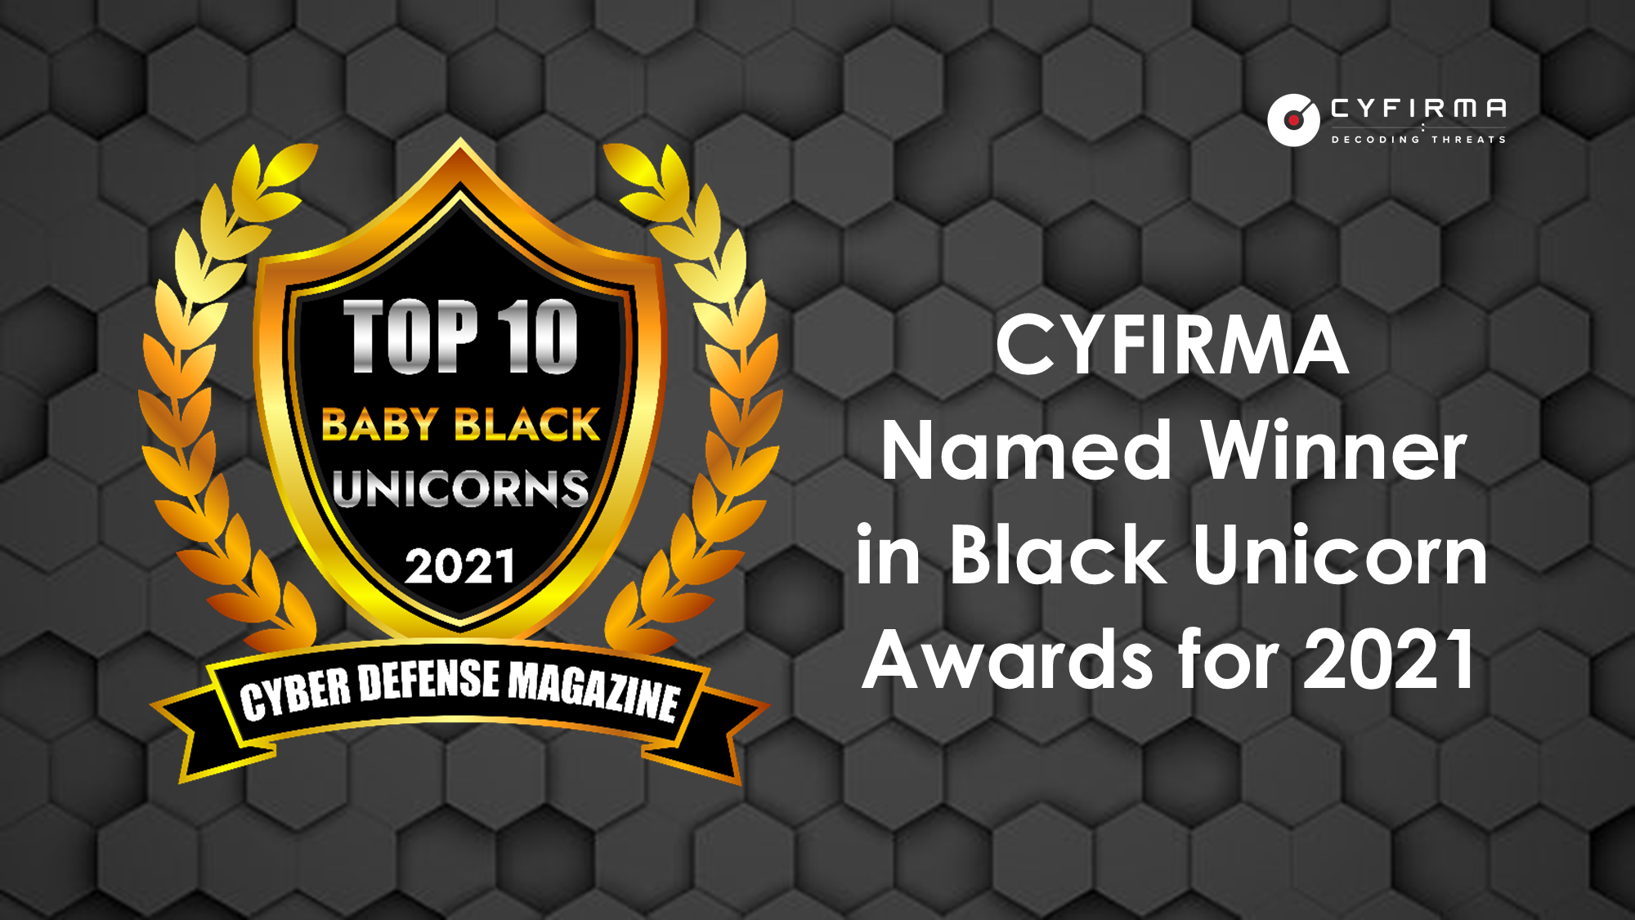 CYFIRMA Named Winner in Black Unicorn Awards for 2021